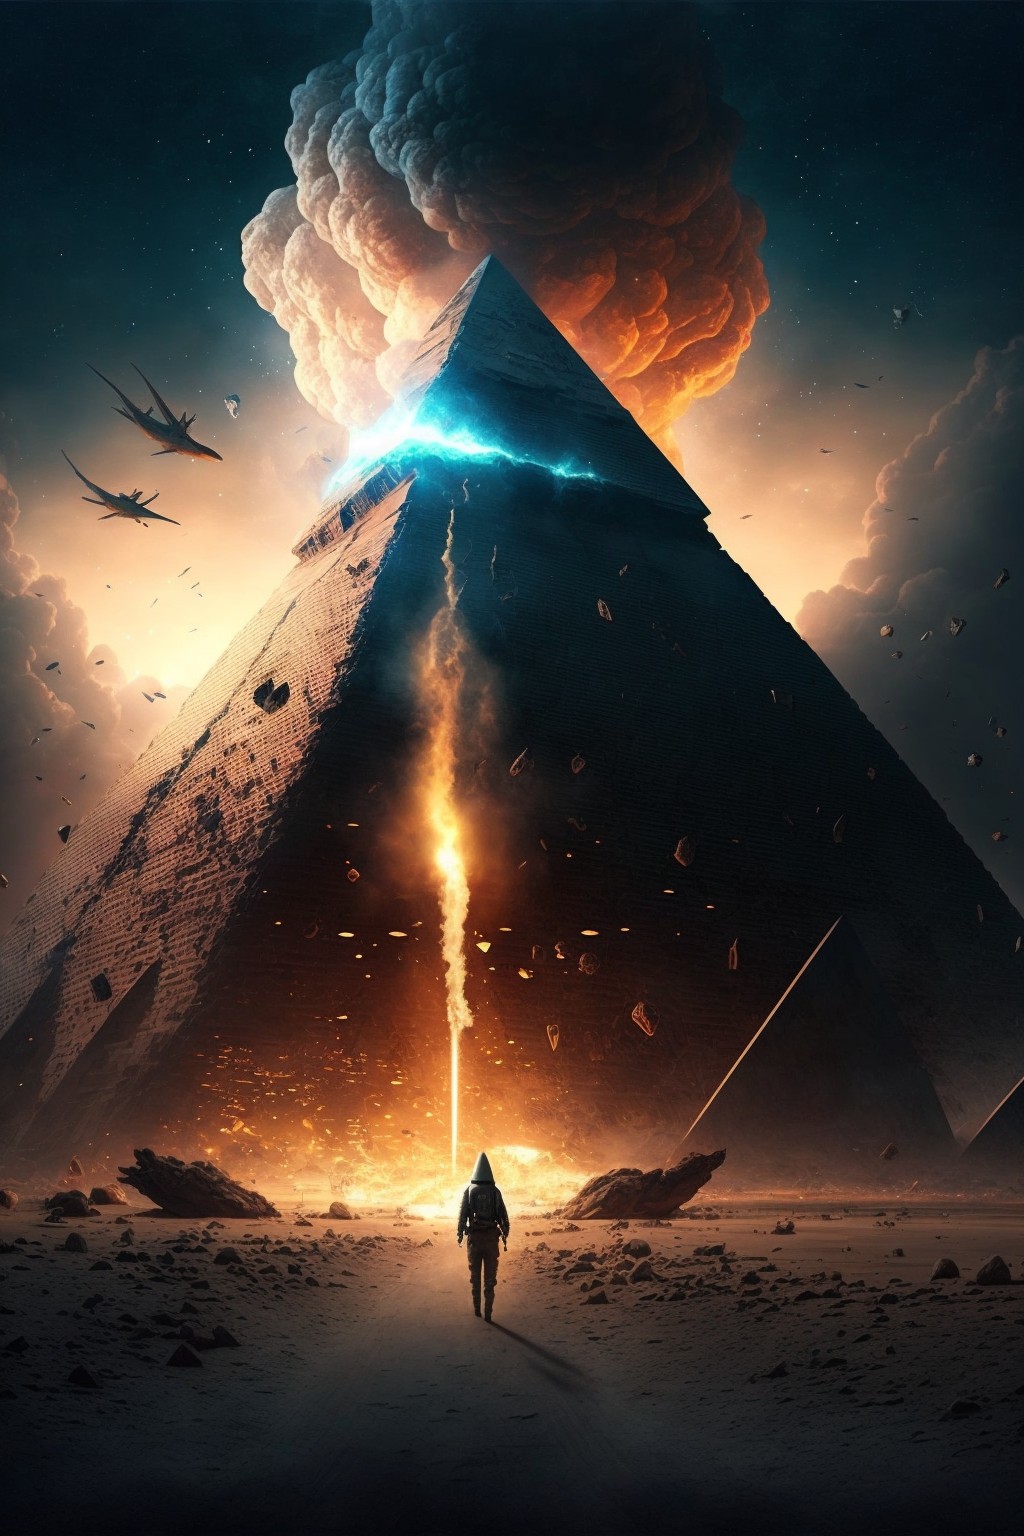 三体人降落了金字塔形状的宇宙飞船，人类领袖独自迎接